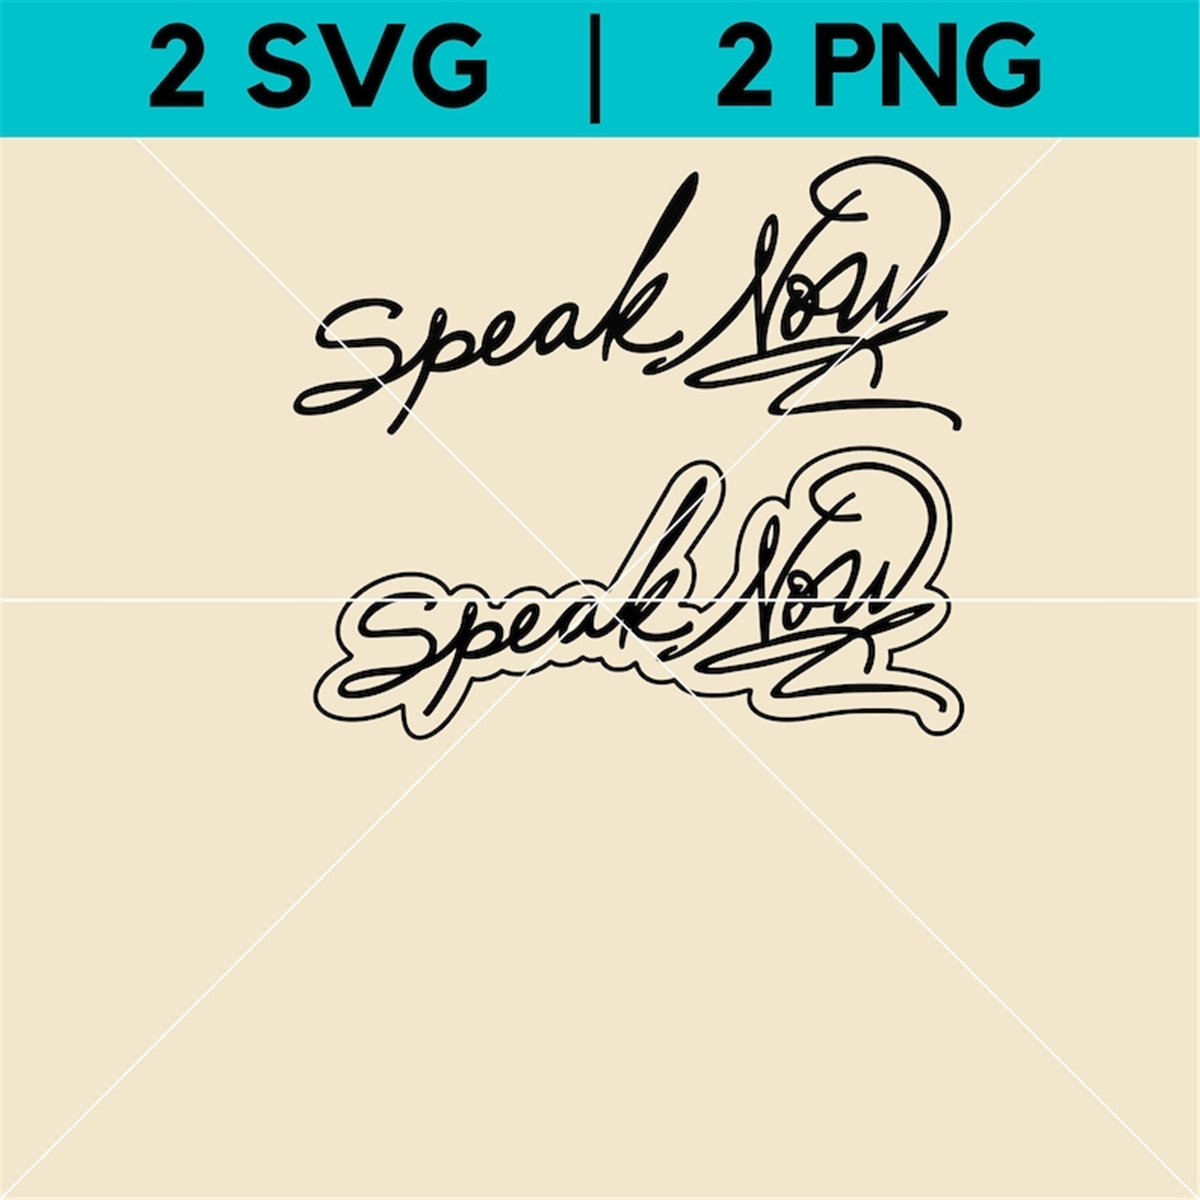 speak-now-png-taylor-swift-svg-digital-clip-art-vector-image-1